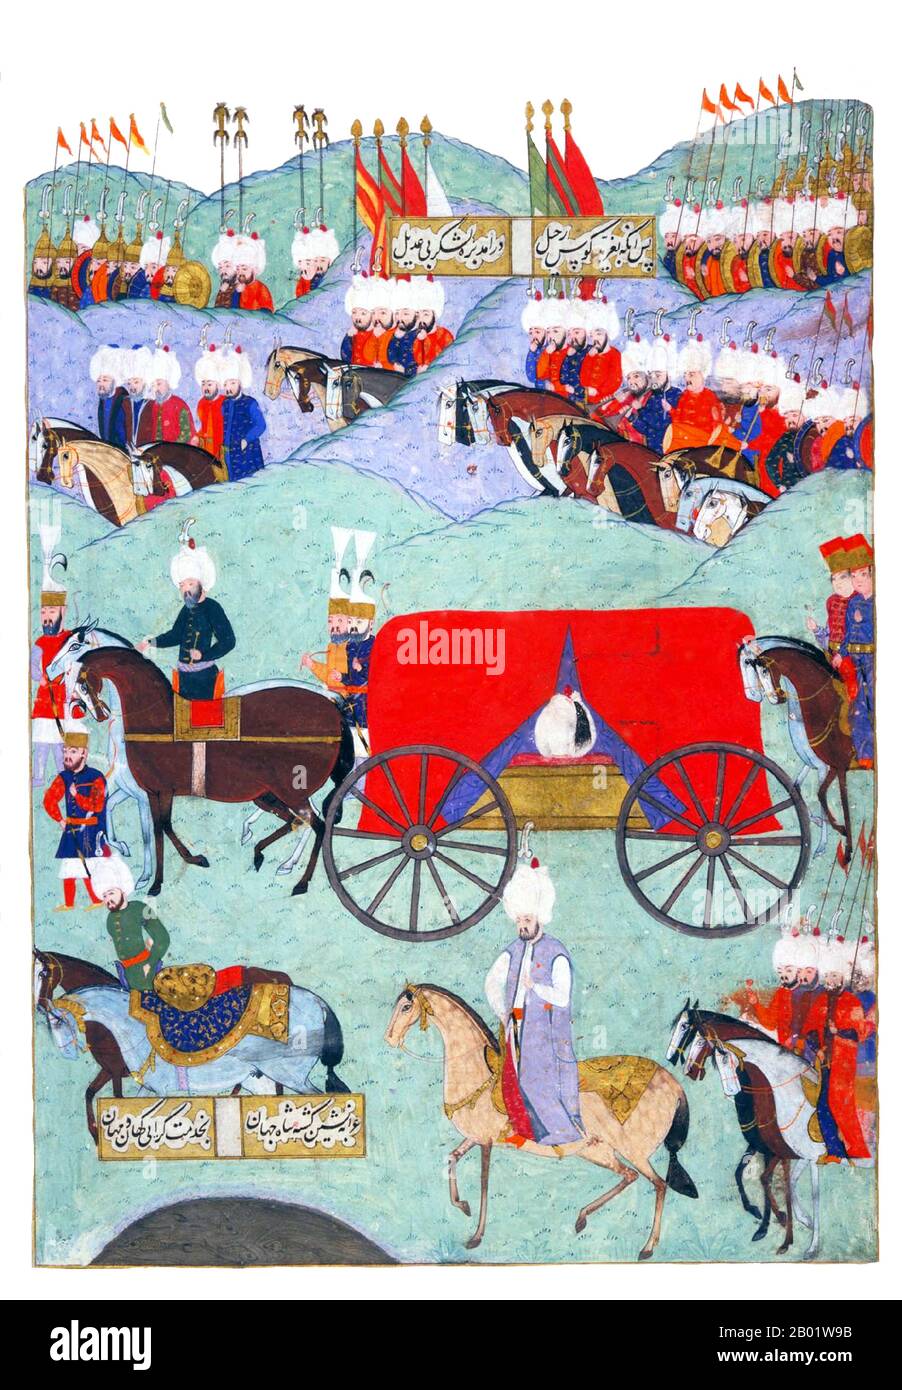 Turquie : funérailles du sultan Suleyman le magnifique (6 novembre 1494 - 6 septembre 1566). Tableau miniature ottoman (panneau de gauche) de Matrakci Nasuh, 1579. Sultan Suleyman/Suleiman I (R. 1520-1566), également connu sous les noms de Suleyman le magnifique et Suleyman le législateur, était le 10e et le plus long sultan régnant de l'empire ottoman. Il mena personnellement ses armées à conquérir la Transylvanie, la mer Caspienne, une grande partie du moyen-Orient et du Maghreb. Suleyman introduit des réformes radicales dans la législation turque, l'éducation, la fiscalité et le droit pénal, et est très respecté en tant que poète et orfèvre. Banque D'Images